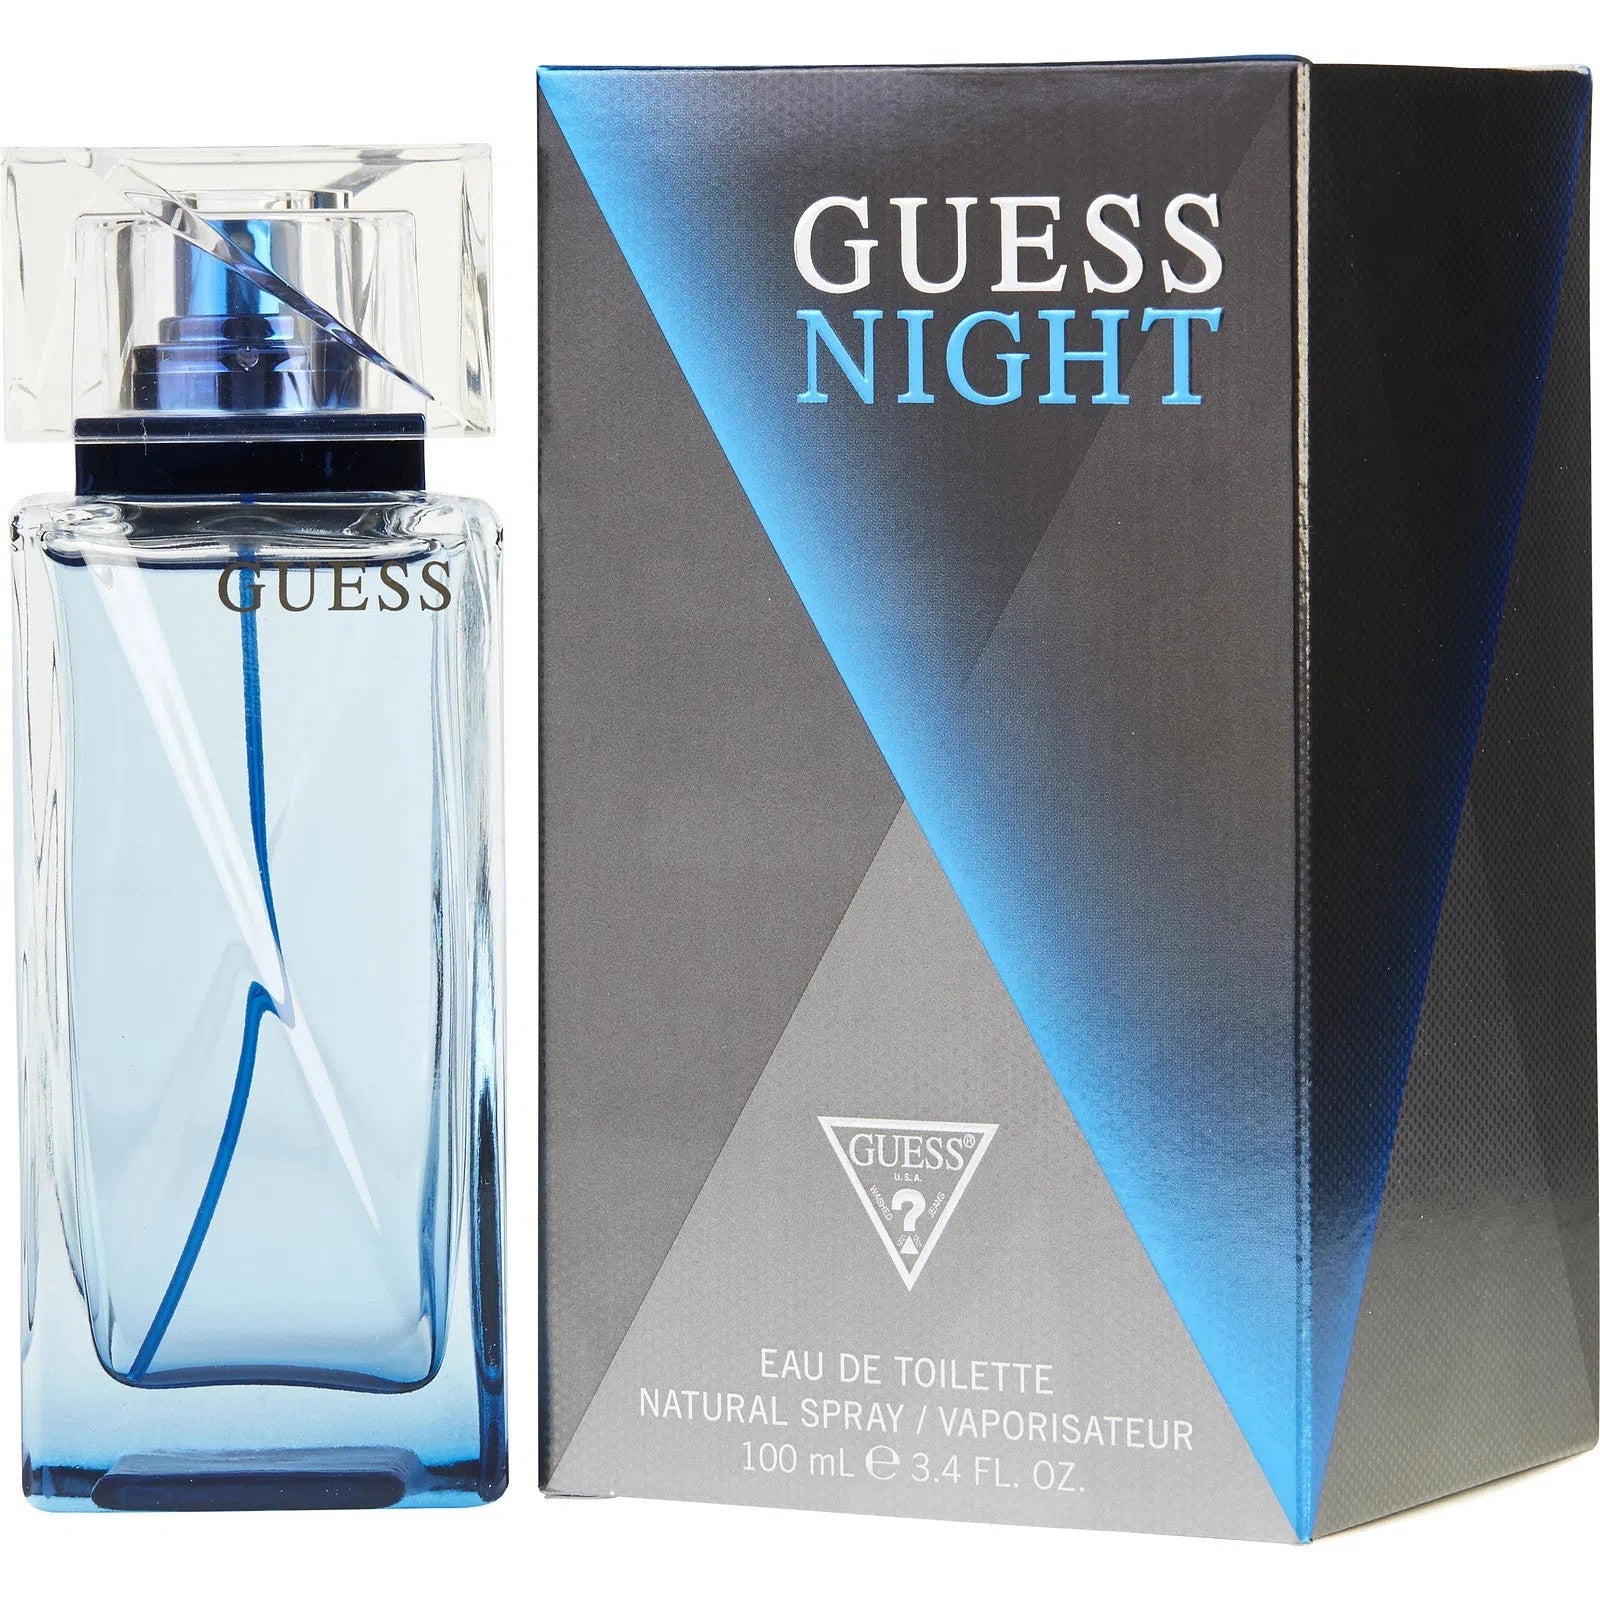 Perfume Guess Night EDT (M) / 100 ml - 085715321312- Prive Perfumes Honduras